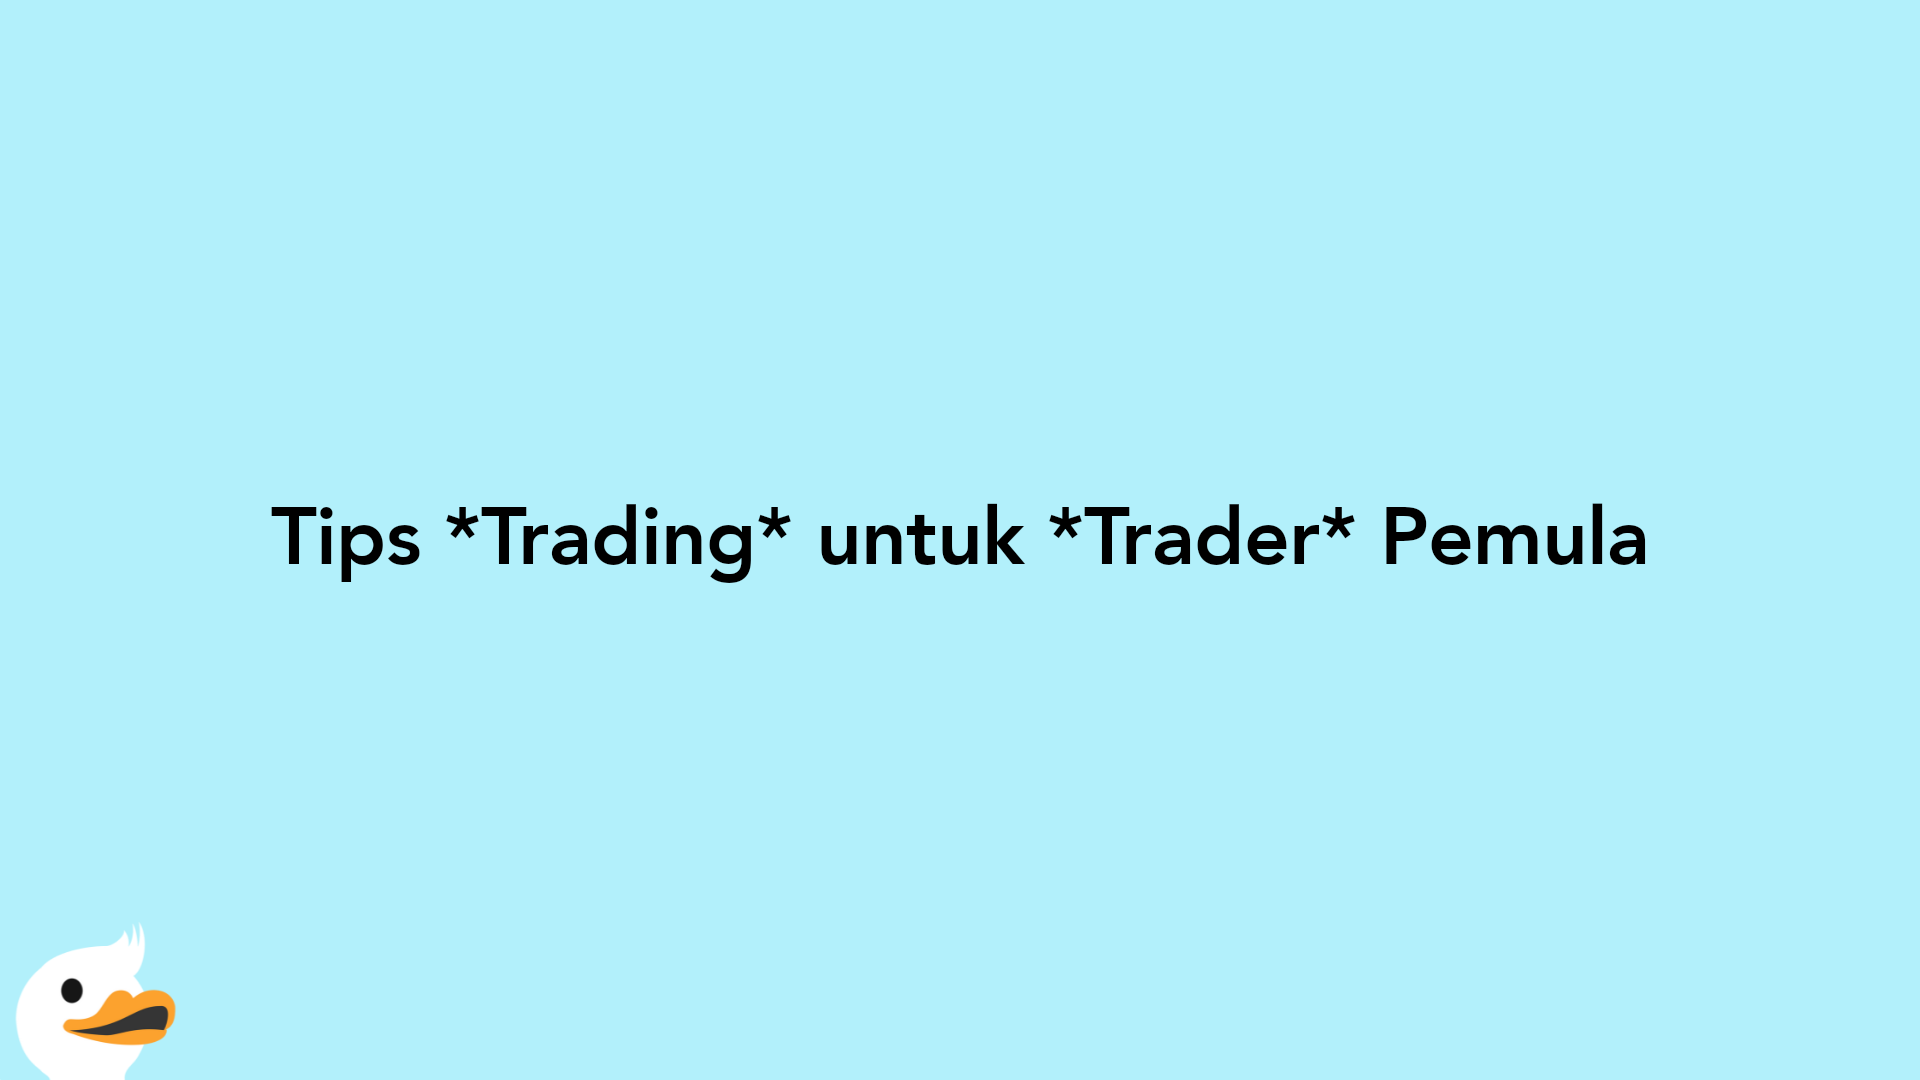 Tips Trading untuk Trader Pemula